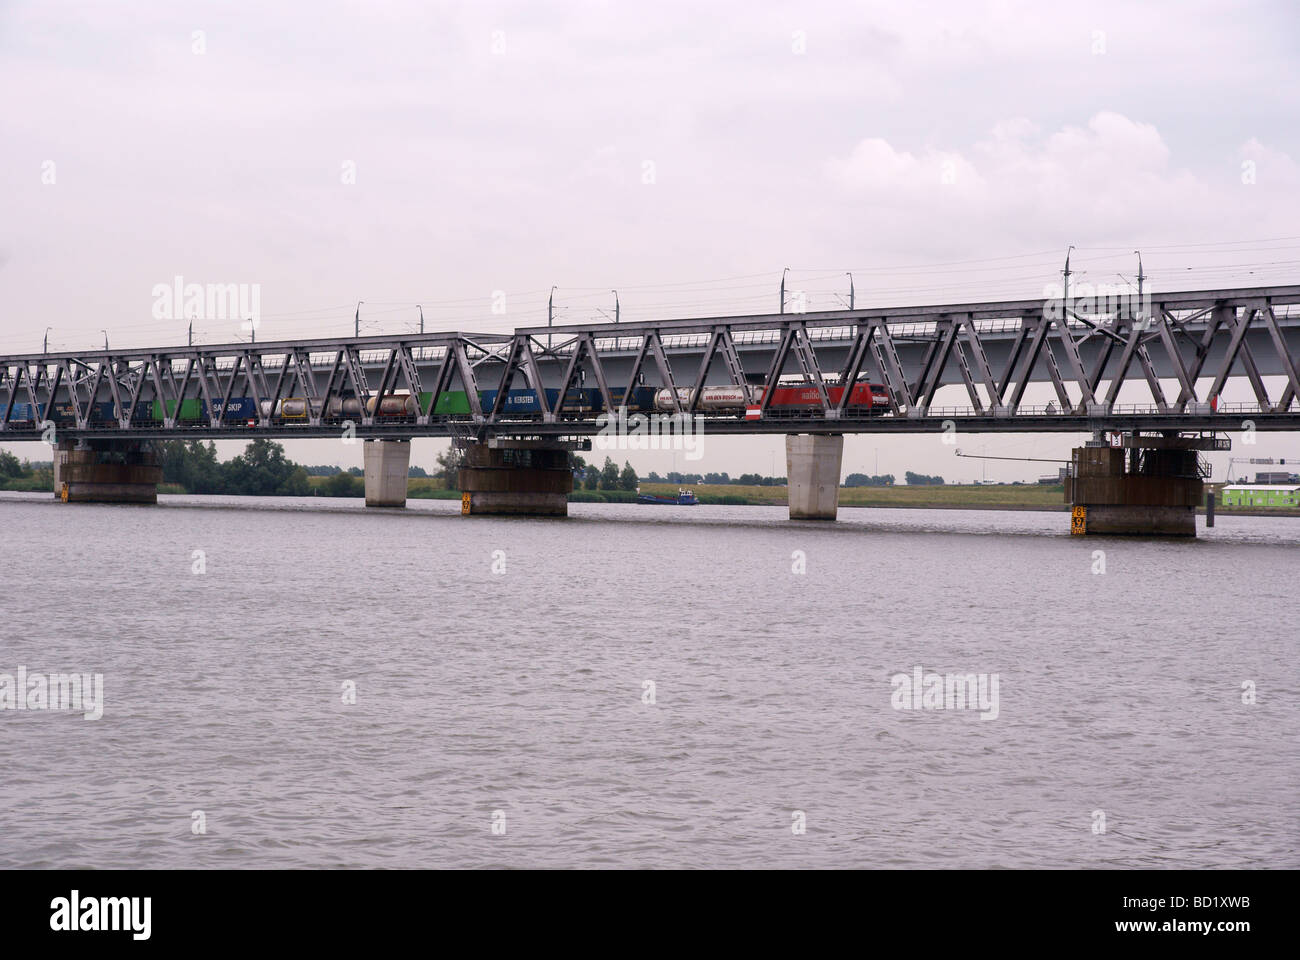 The Moerdijk Railway Bridges Stock Photo